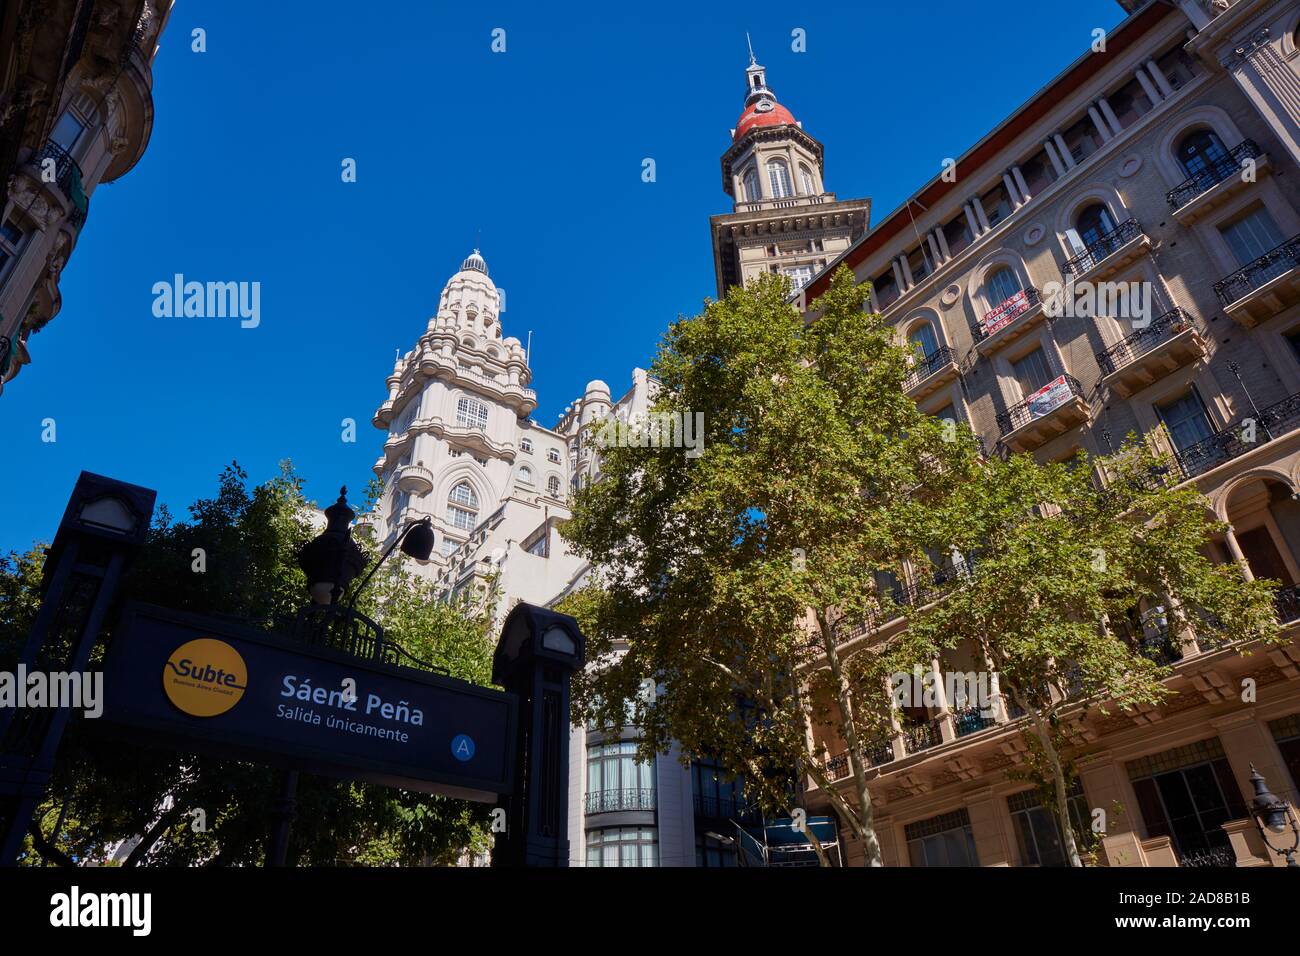 Der Palacio Barolo' und 'La Inmobiliaria' Gebäude aus der U-Bahn Station aenz Peña" gesehen. Die Avenida de Mayo, Buenos Aires, Argentinien. Stockfoto